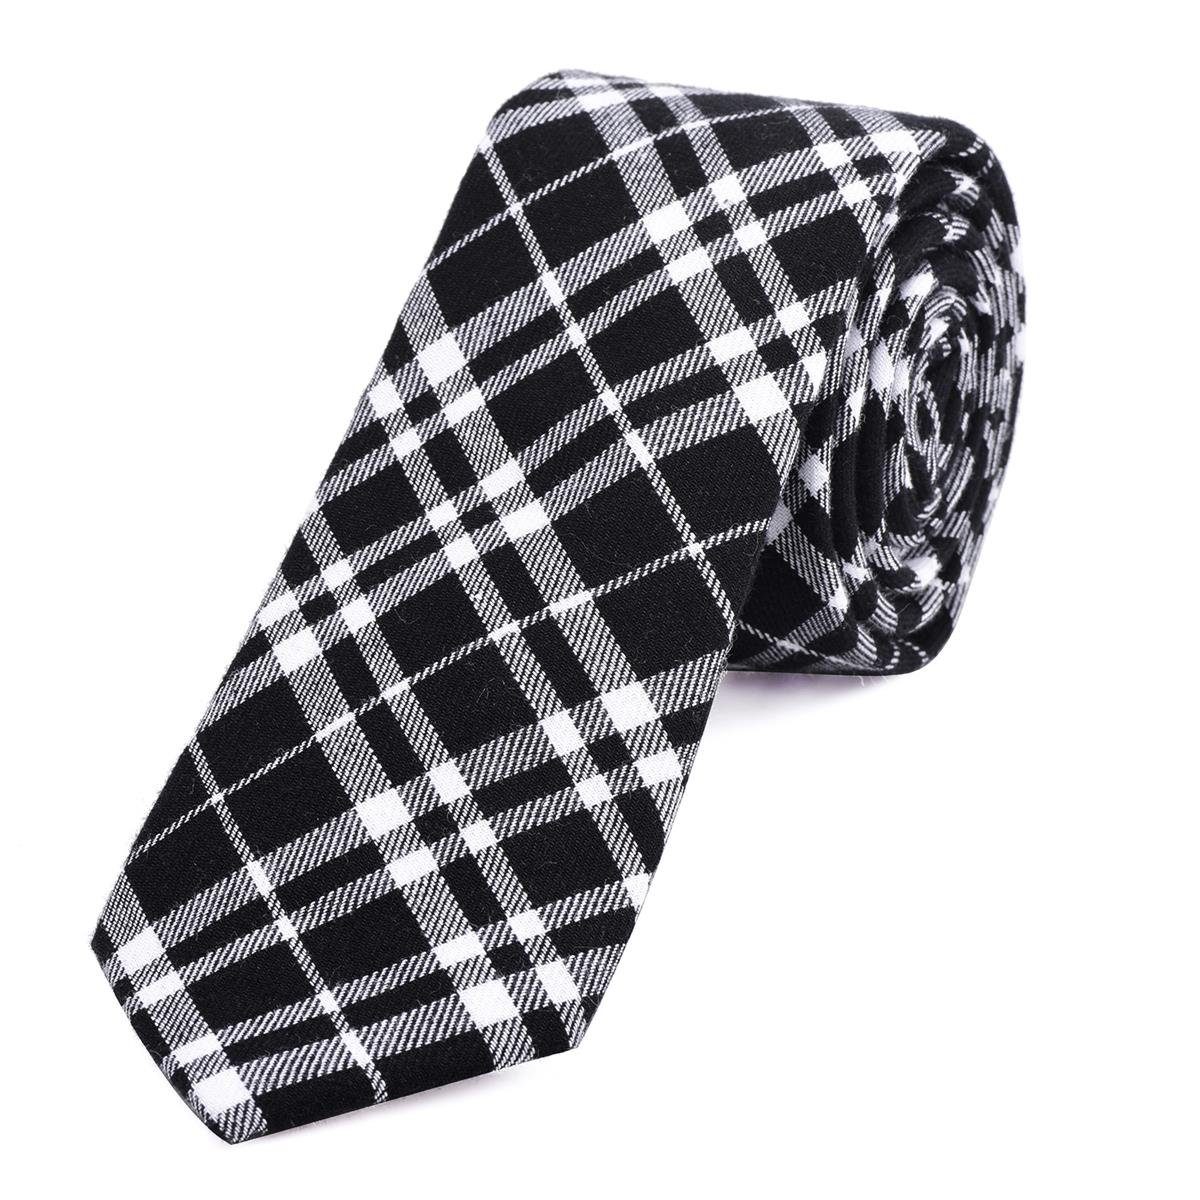 DonDon Krawatte Herren Krawatte 6 cm mit Karos oder Streifen (Packung, 1-St., 1x Krawatte) Baumwolle, kariert oder gestreift, für Büro oder festliche Veranstaltungen schwarz-weiß kariert 2 | Breite Krawatten